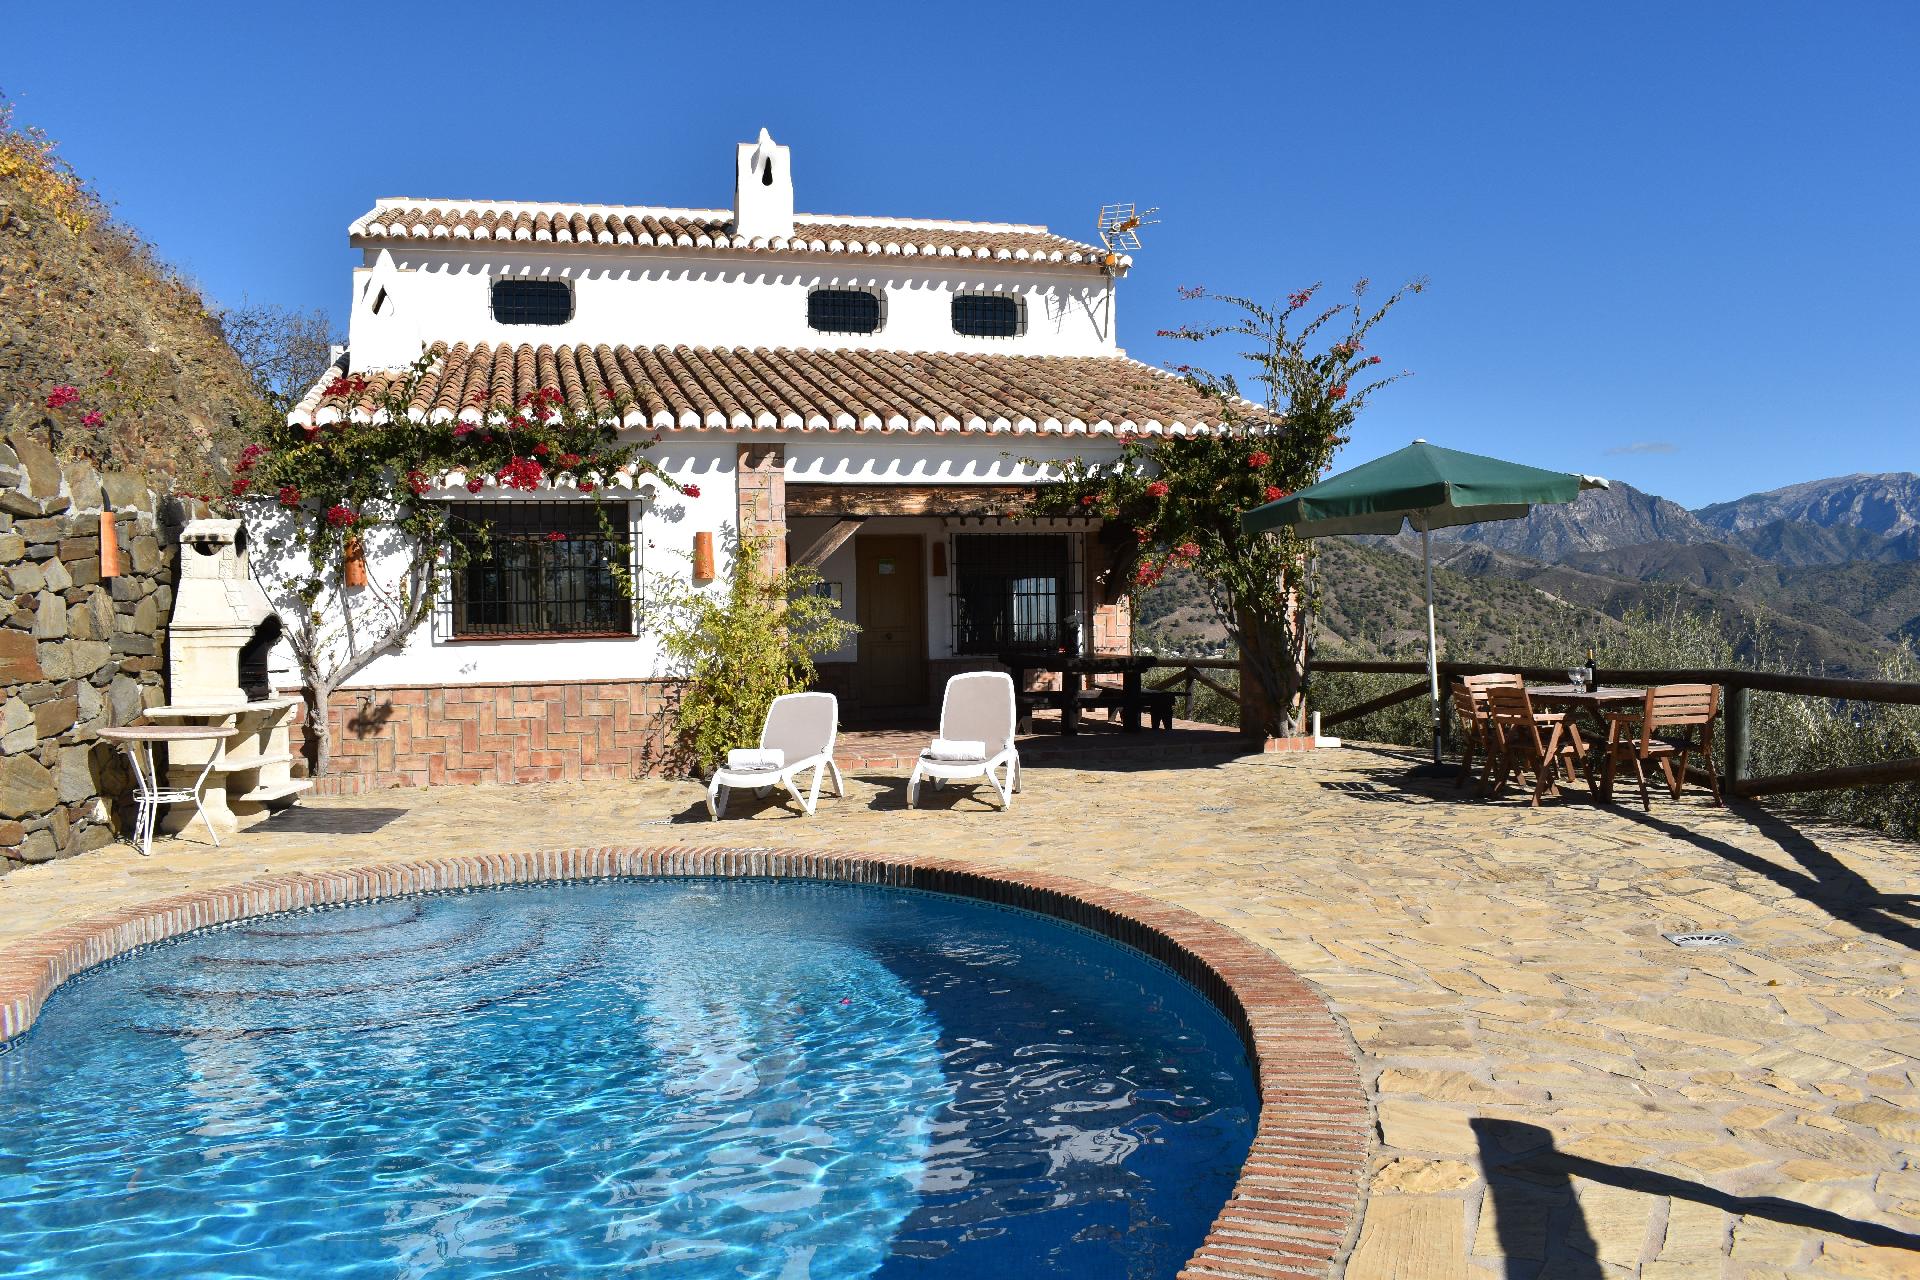 Finca Lagarillo mit privatem Pool Ferienhaus in Spanien